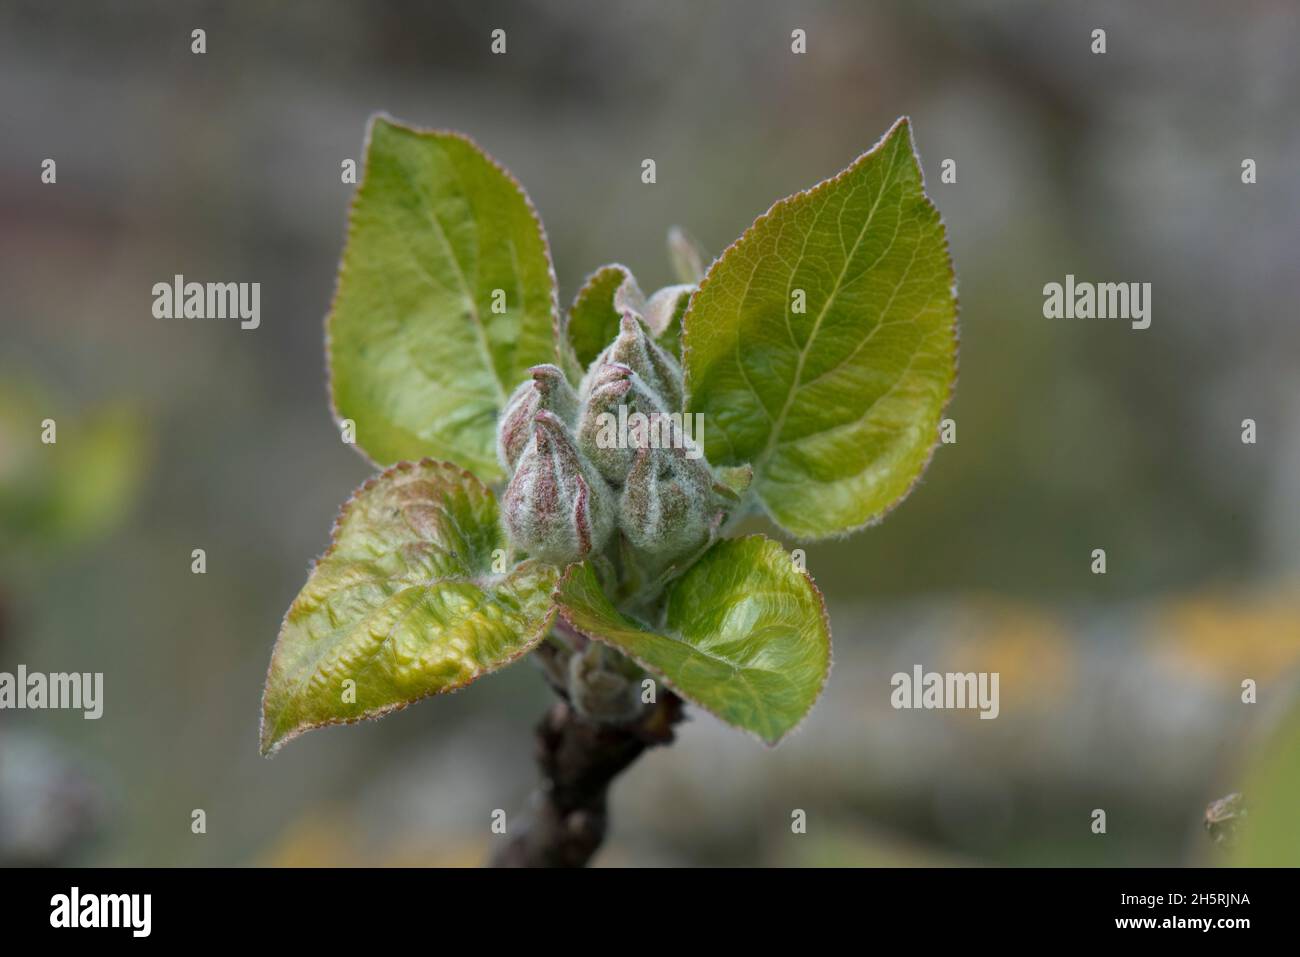 Un groupe de boutons de fleur de pomme a été cueil dans une rosette de nouvelles feuilles sur un arbre au printemps, Berkshire, avril Banque D'Images